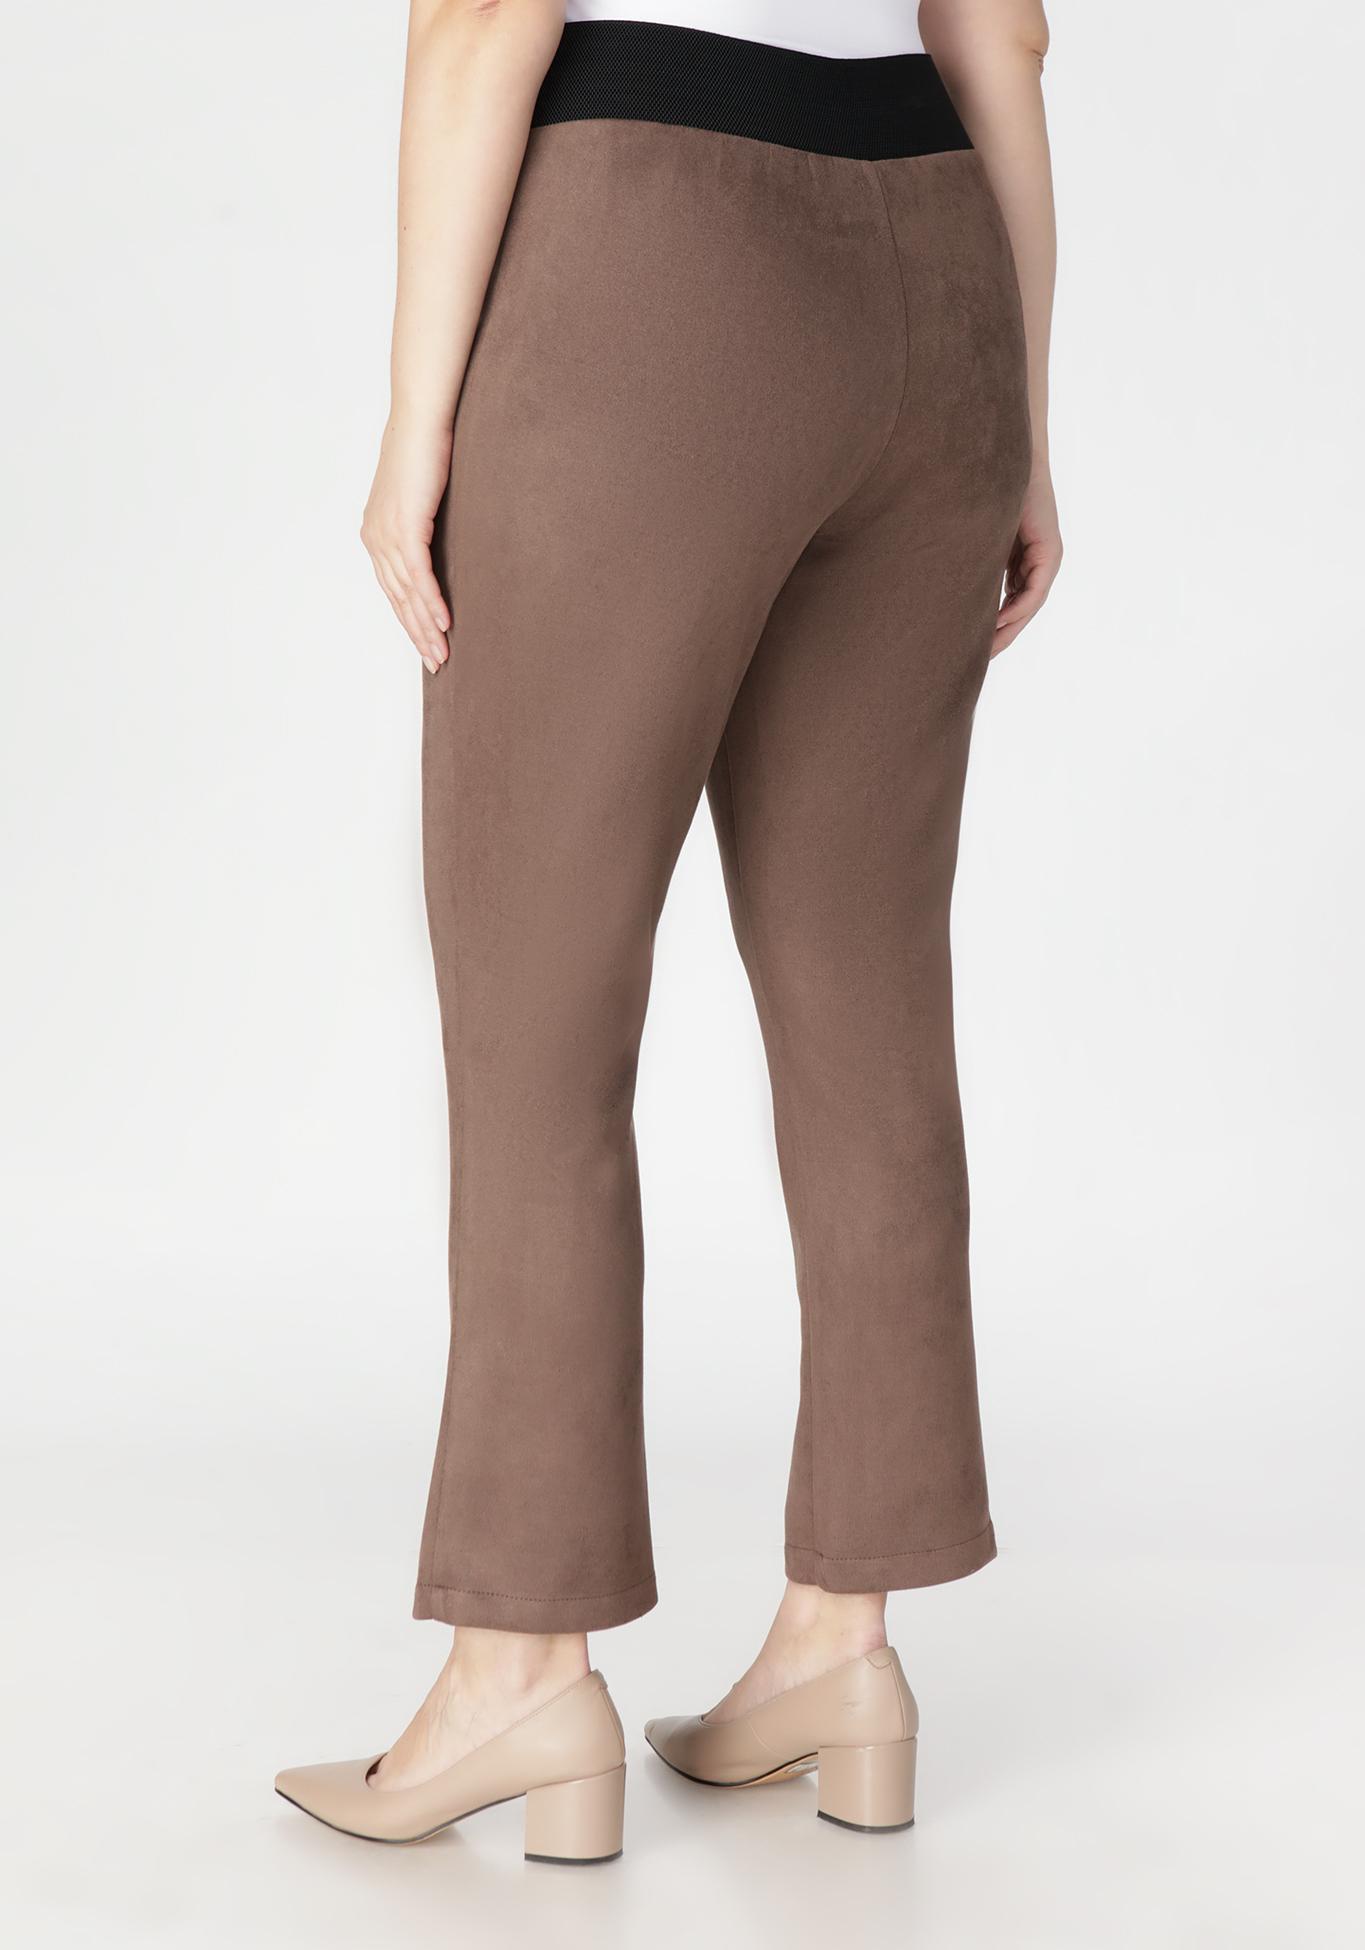 Брюки женские «Элегантный стиль» Bianka Modeno, размер 50, цвет коричневый - фото 2